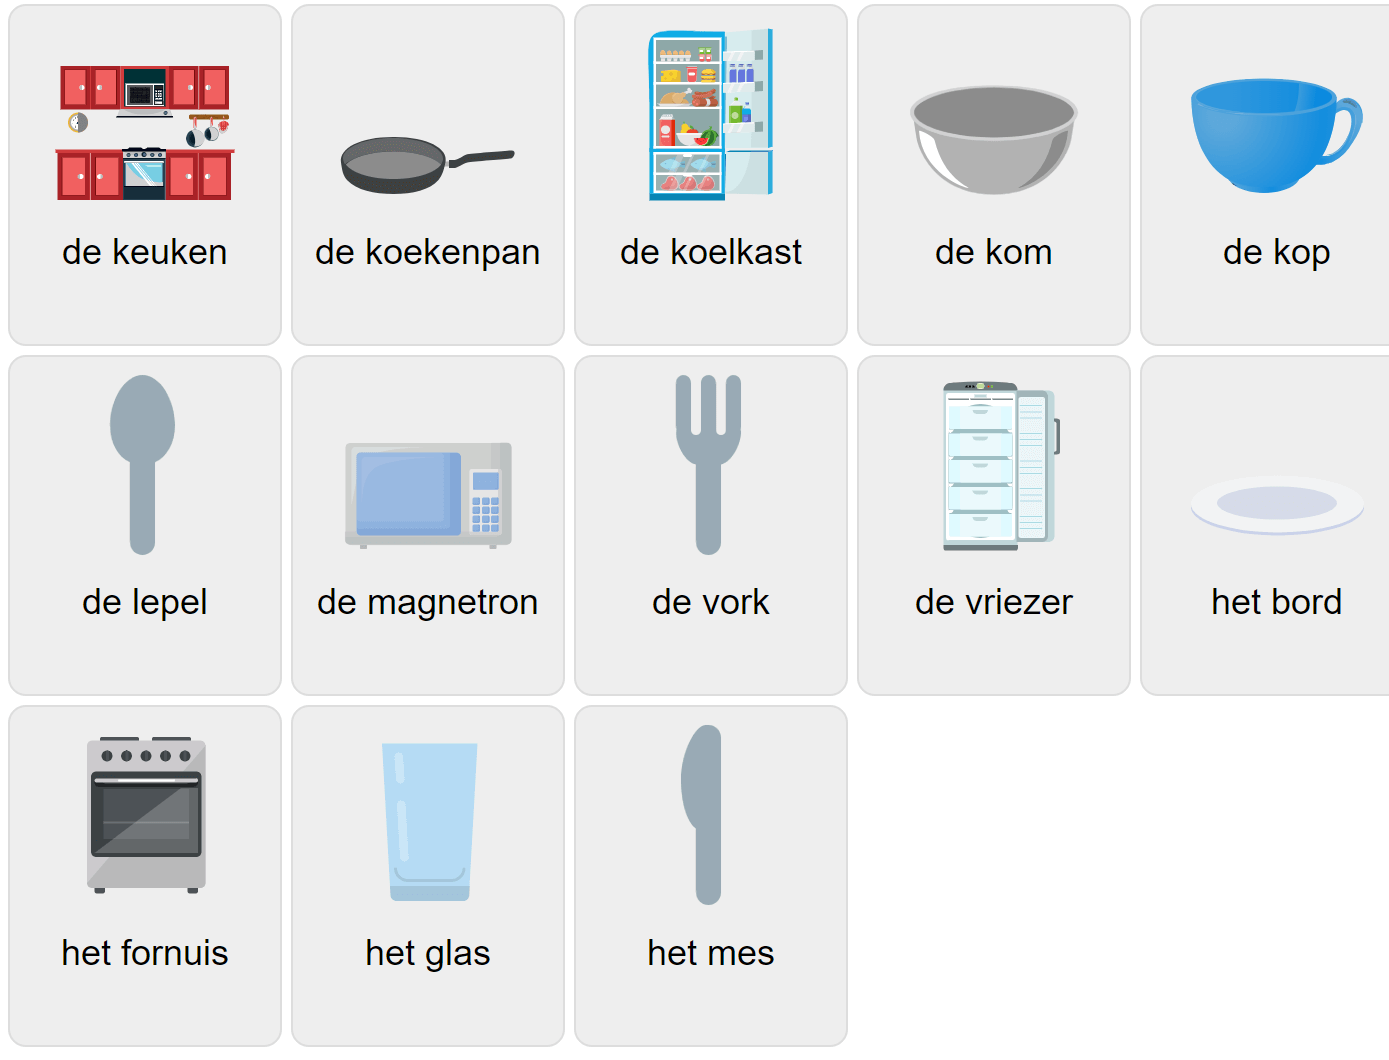 Küchenvokabular auf Niederländisch